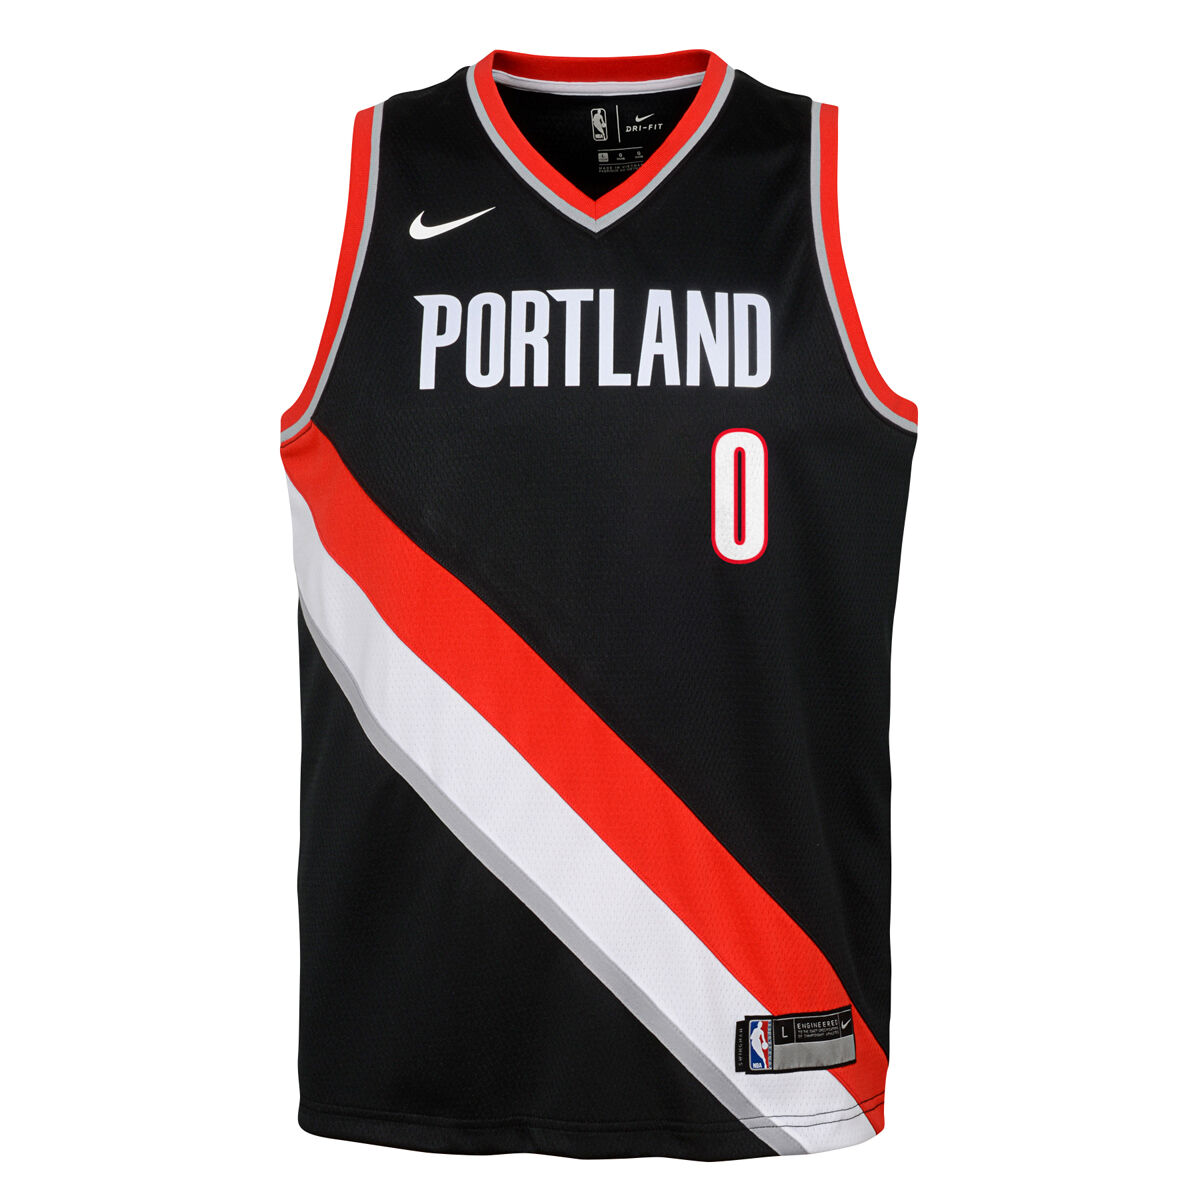 Damian Lillard Portland Trail Blazers Nike City Edition Authentic